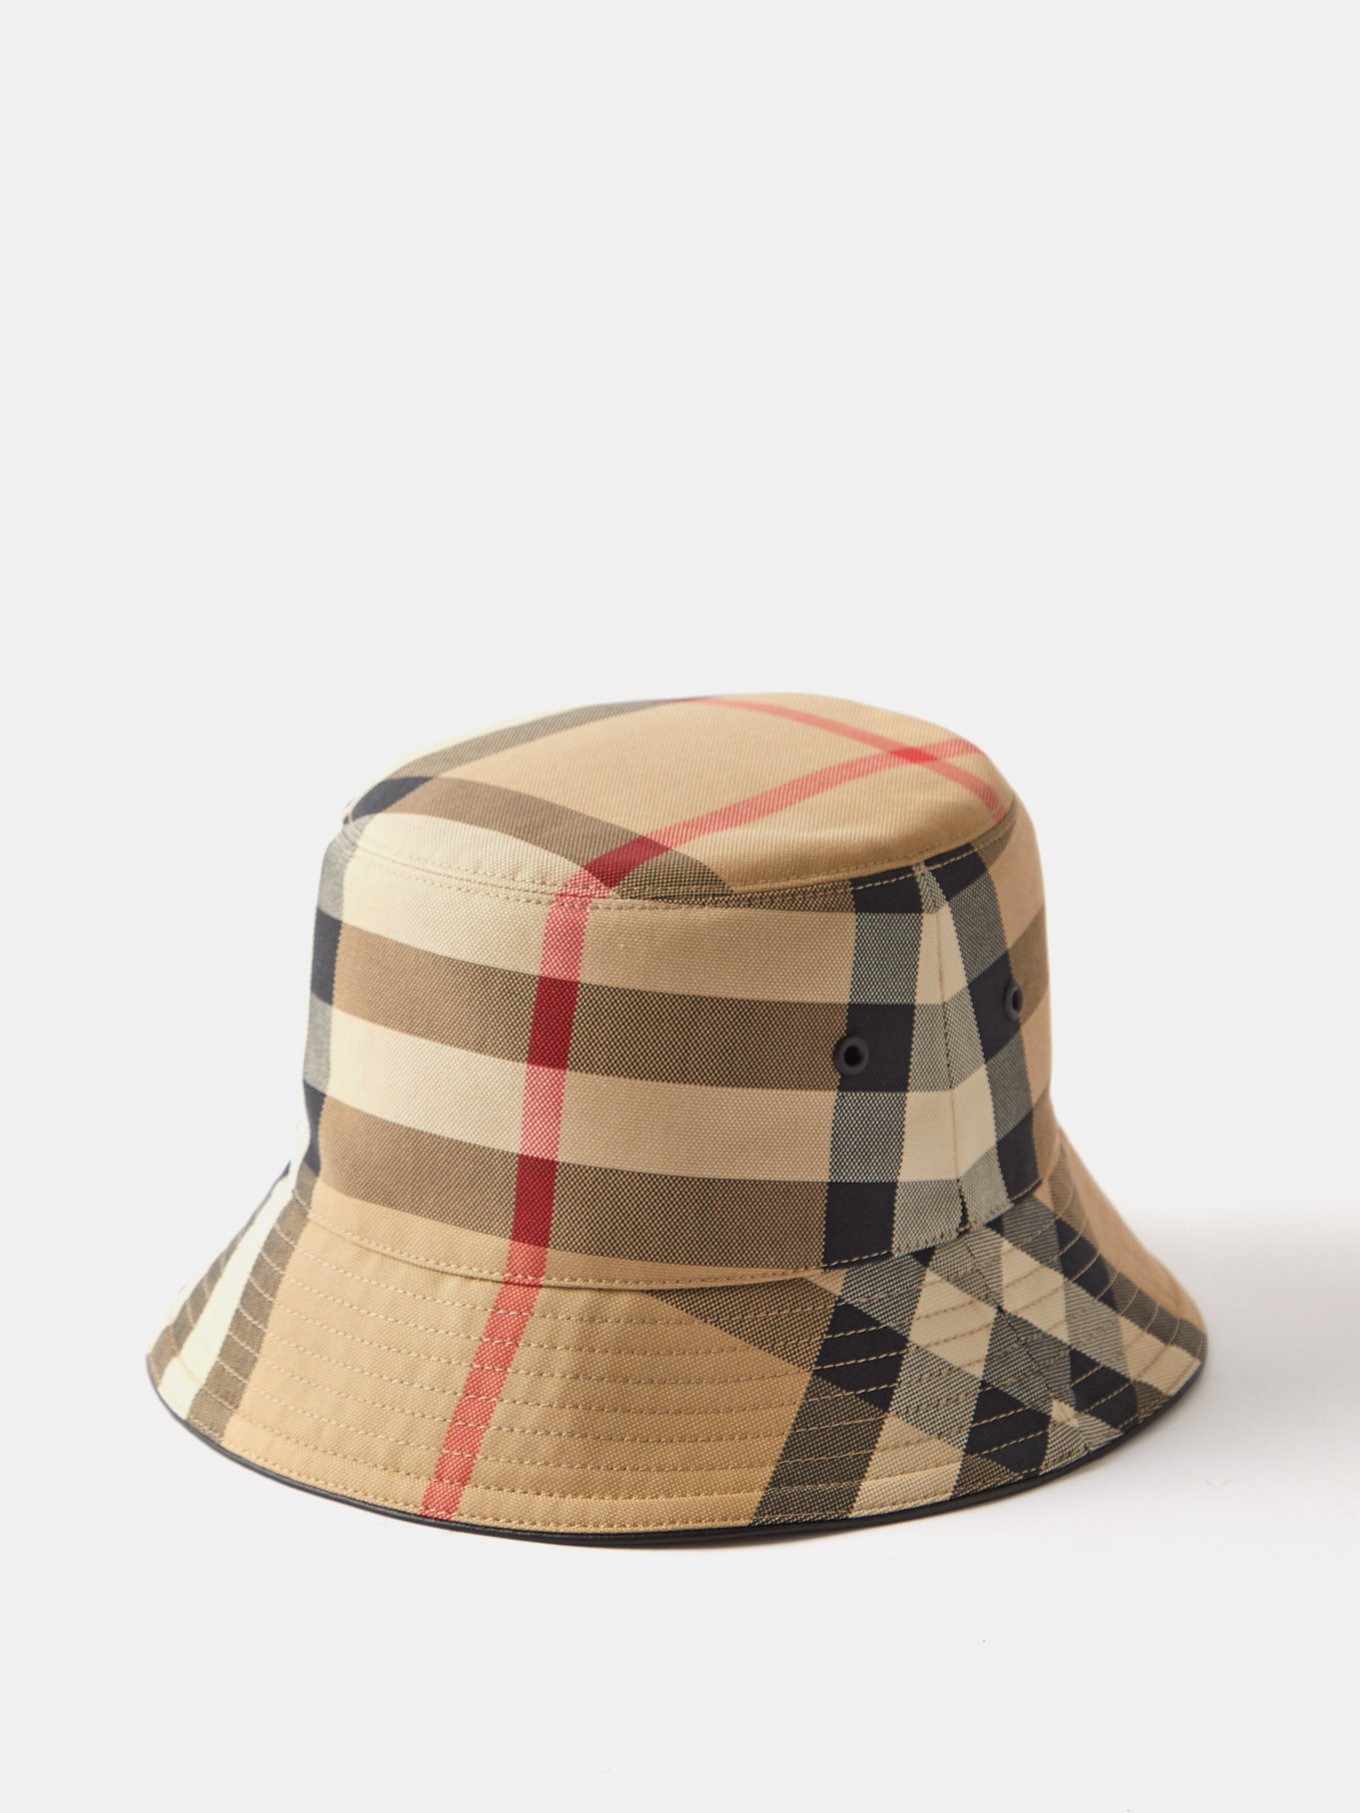 Burberry - Bucket hat